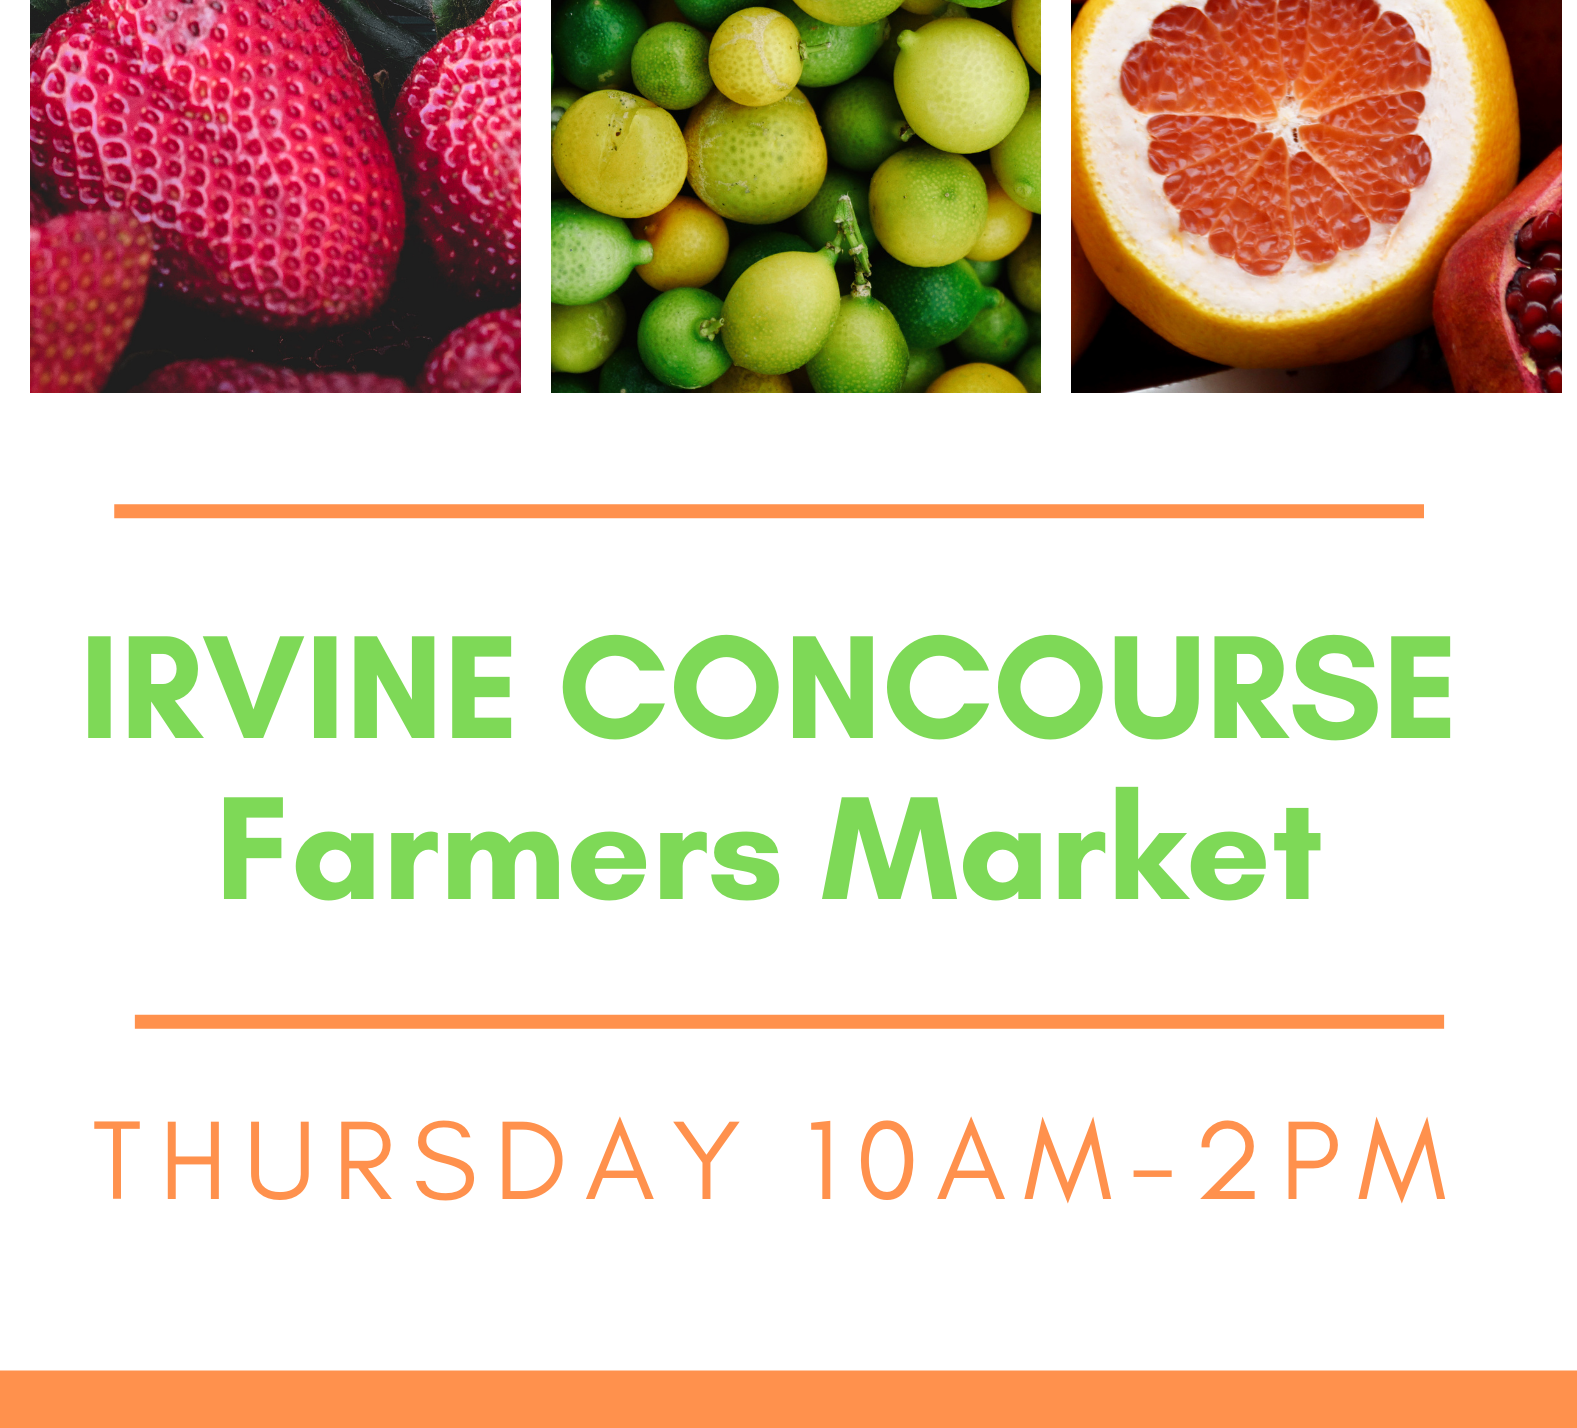 Irvine Concourse Certified Farmers Market